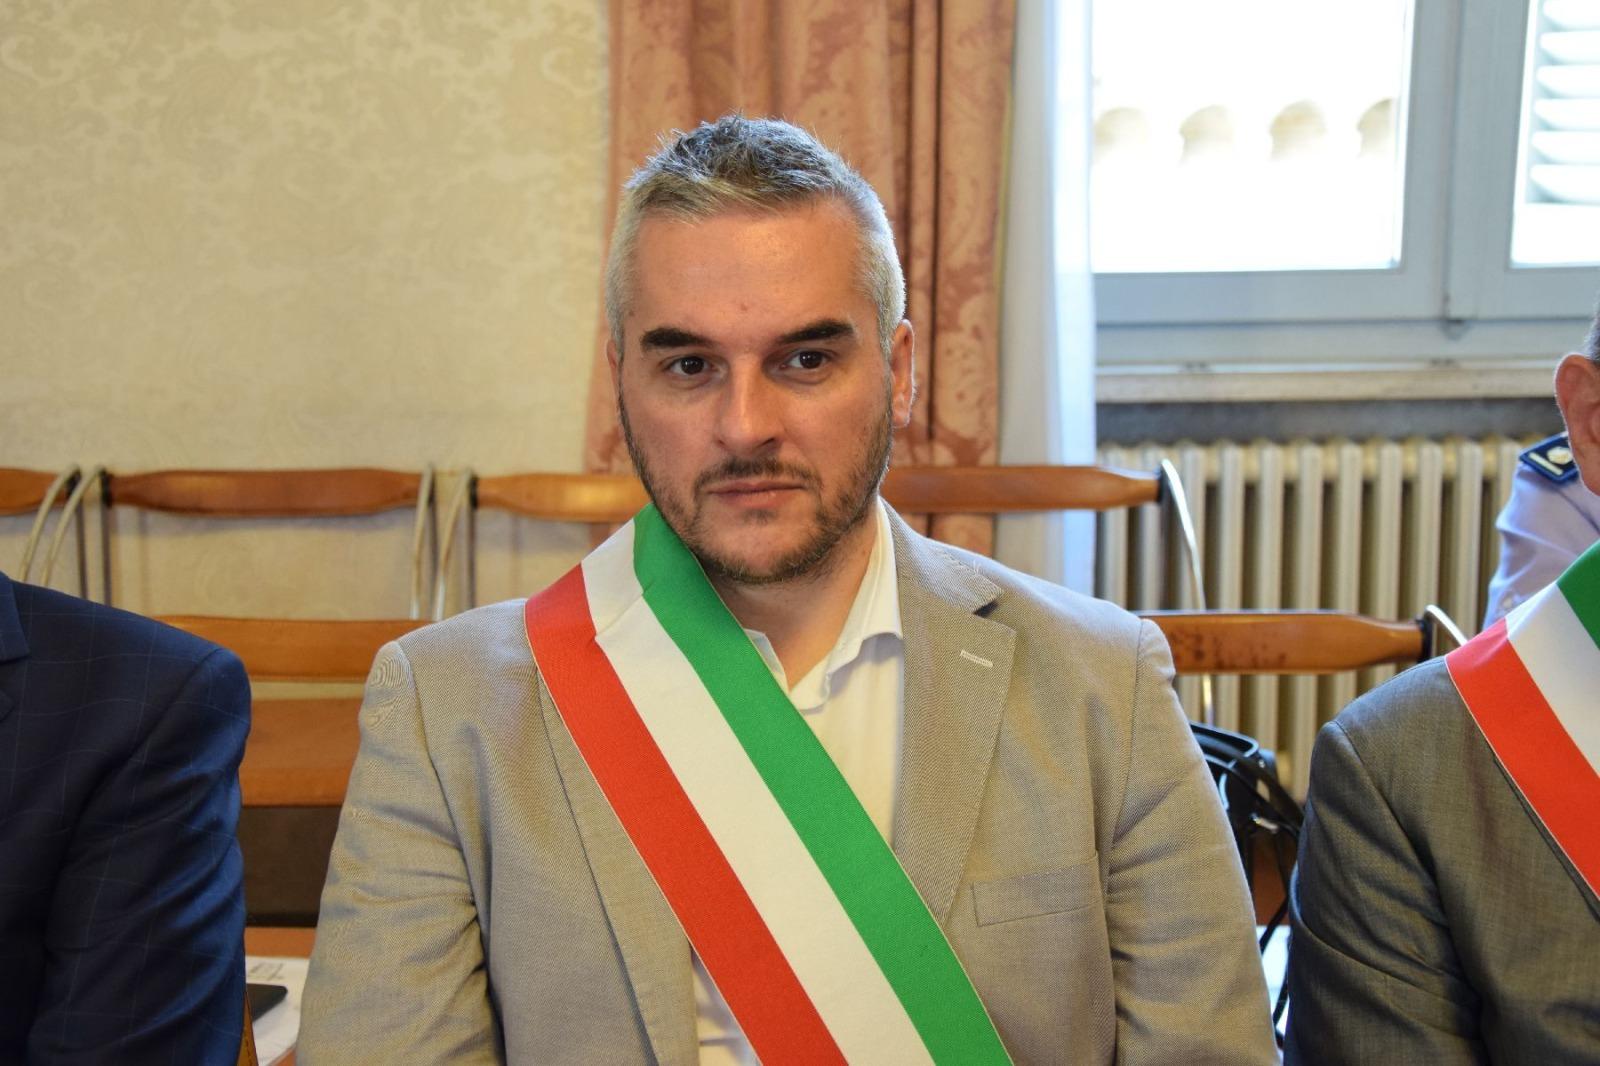 Il sindaco di Fabriano Santarelli (M5s) rinuncia al secondo mandato